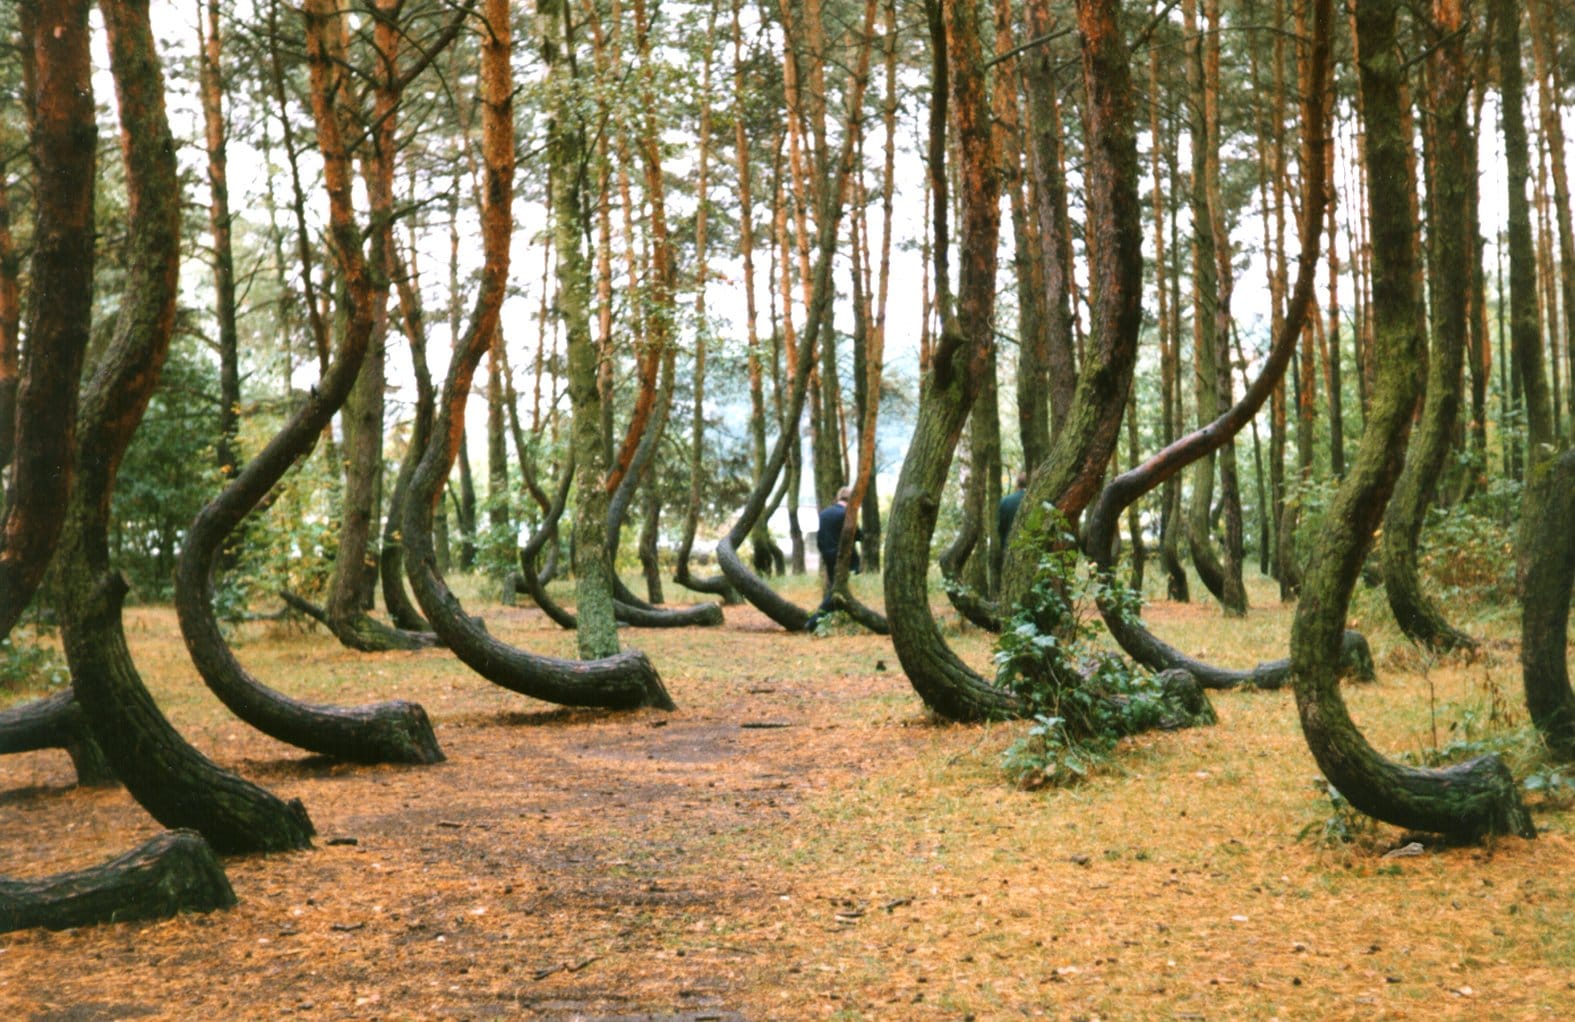 Die sichelförmigen Bäume von Gryfino geben den Menschen Rätsel auf. Die seltsam verbogenen Kiefern stehen in einem etwa 1000 Quadratmeter großen Waldgebiet nahe der nordpolnischen Stadt Gryfino (Greifenhagen).